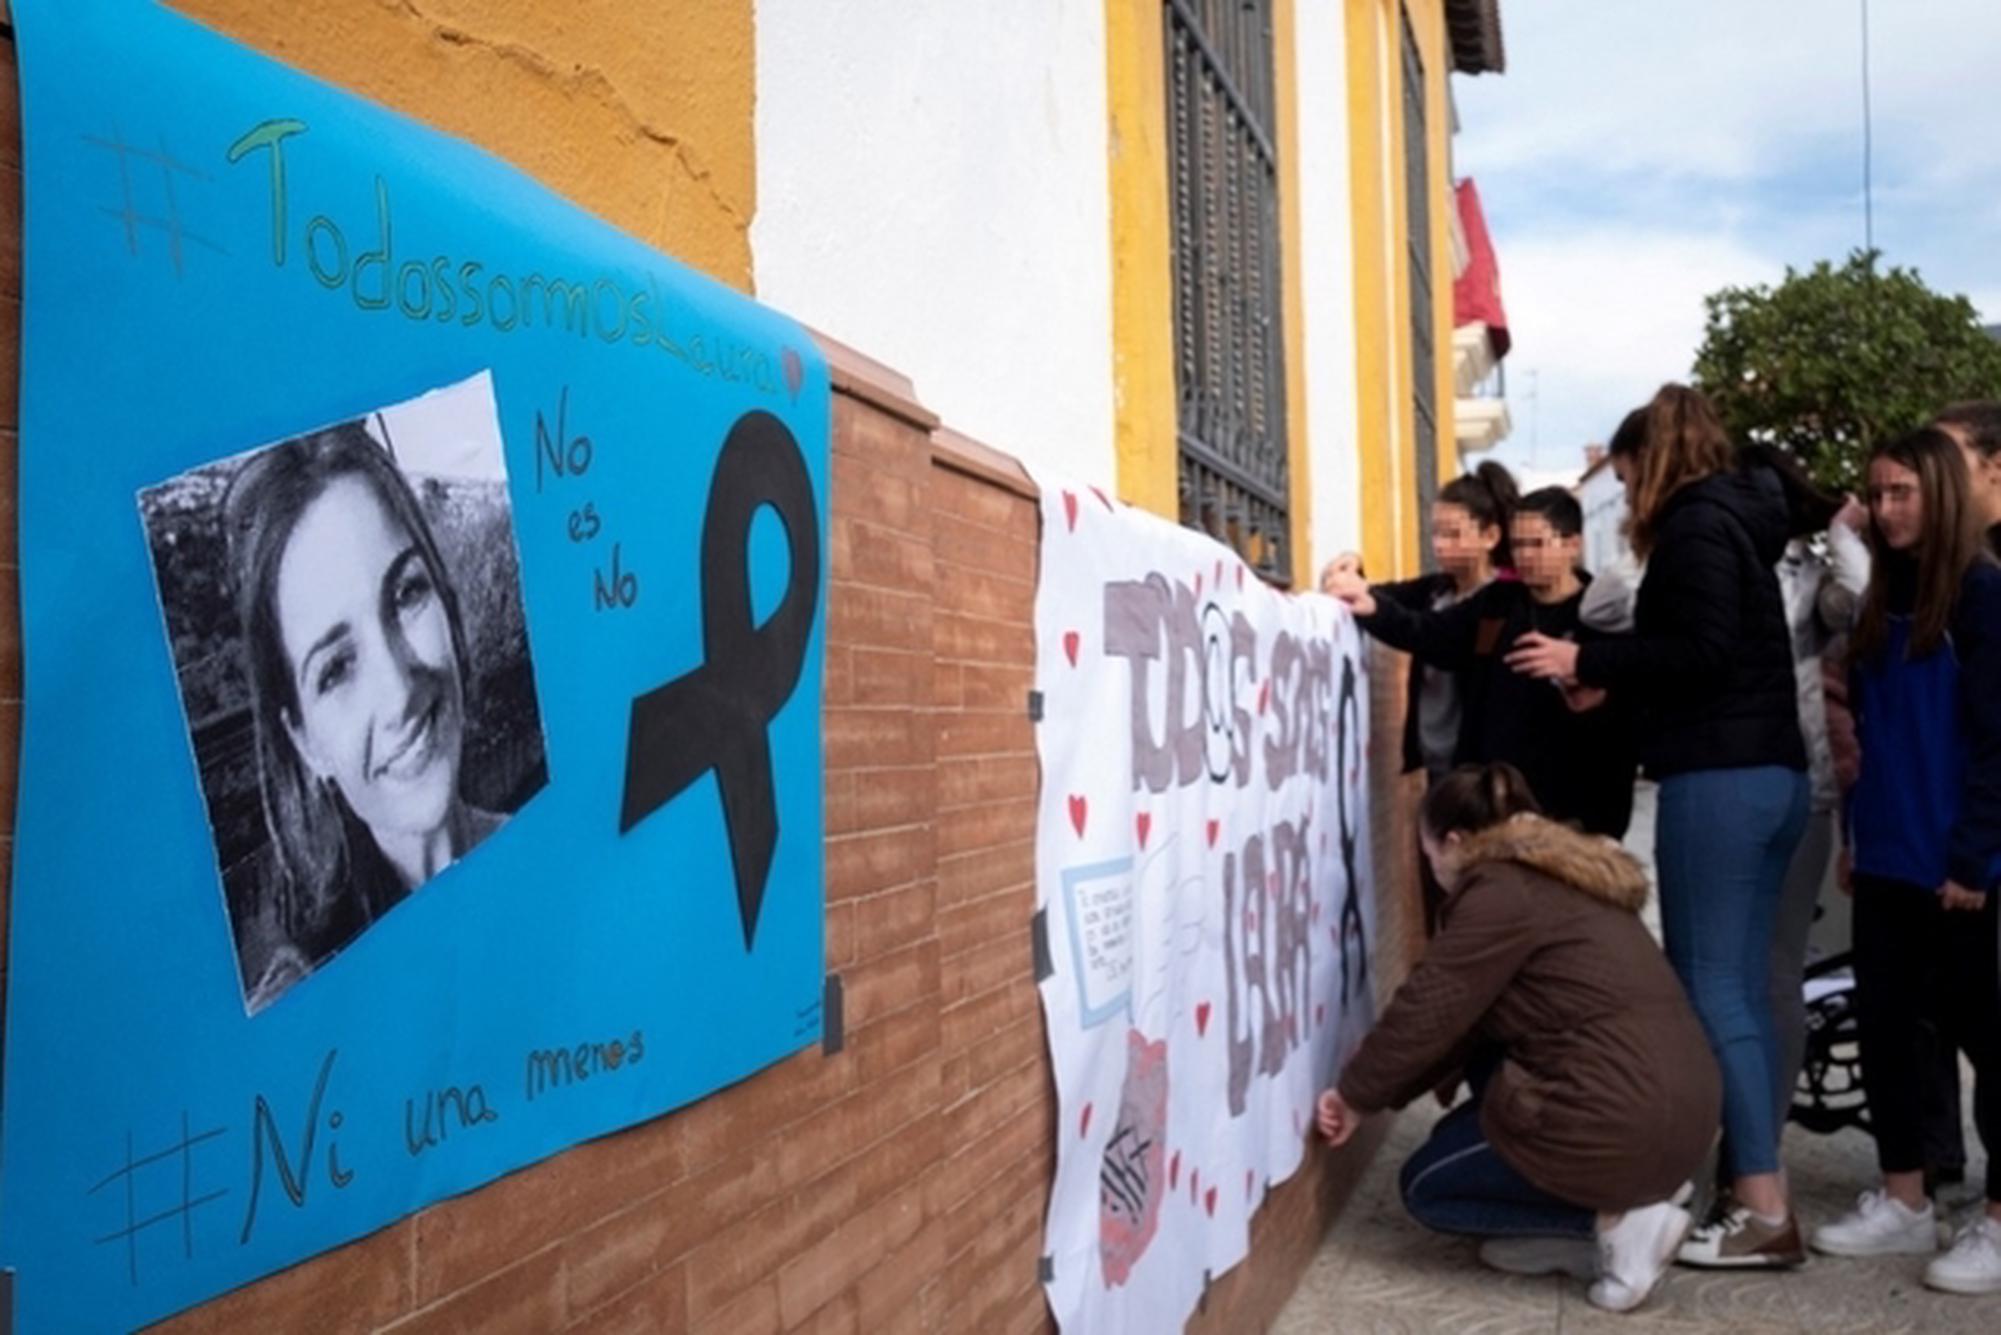 Un infierno de 78 minutos a manos de un “monstruo”: Así describen el brutal asesinato de una profesora en España